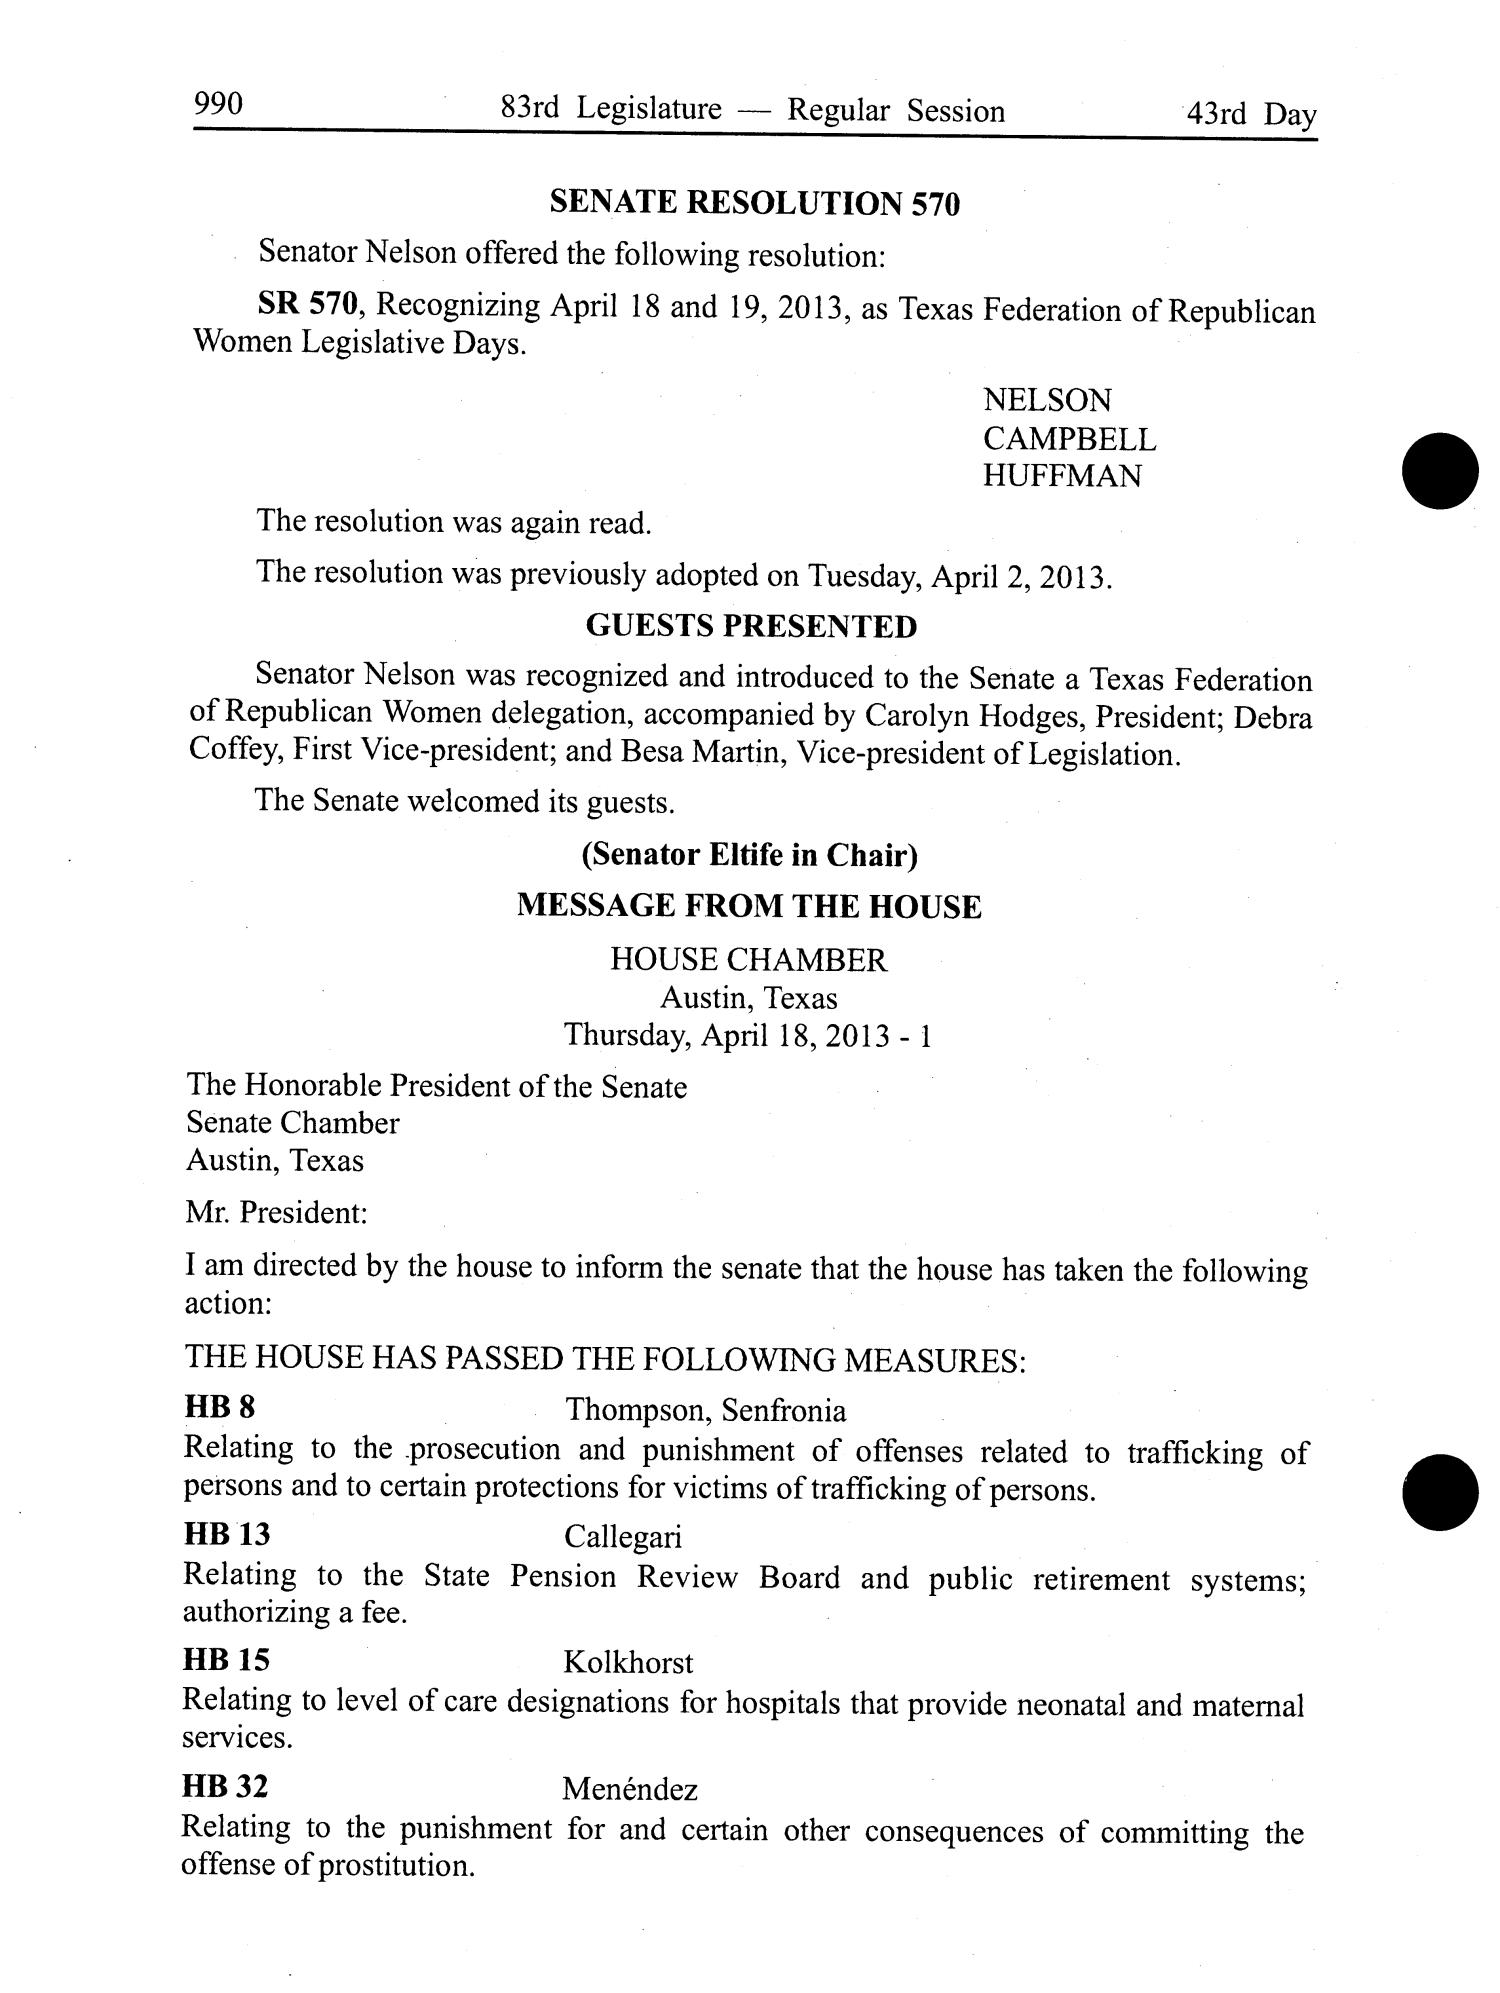 Journal of the Senate of Texas: 83rd Legislature, Regular Session, Thursday, April 18, 2013
                                                
                                                    990
                                                